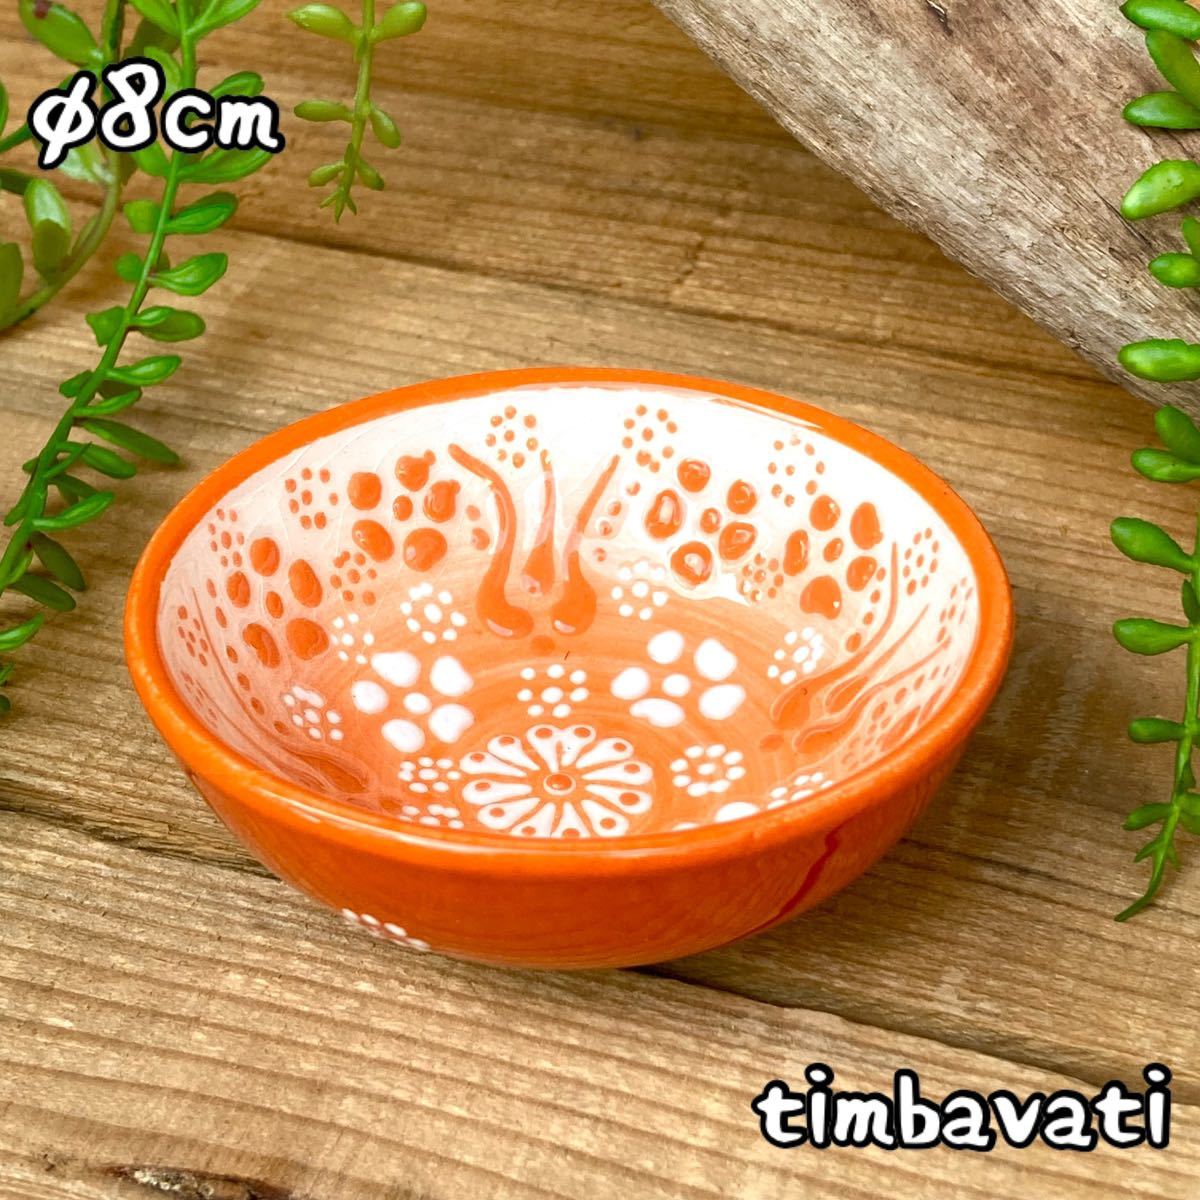 8 cm☆Nouveau☆ Bol de poterie turque, étui à accessoires, petite assiette faite à la main, poterie Kyutahya orange [livraison gratuite sous condition] 176, Vaisselle occidentale, bol, autres